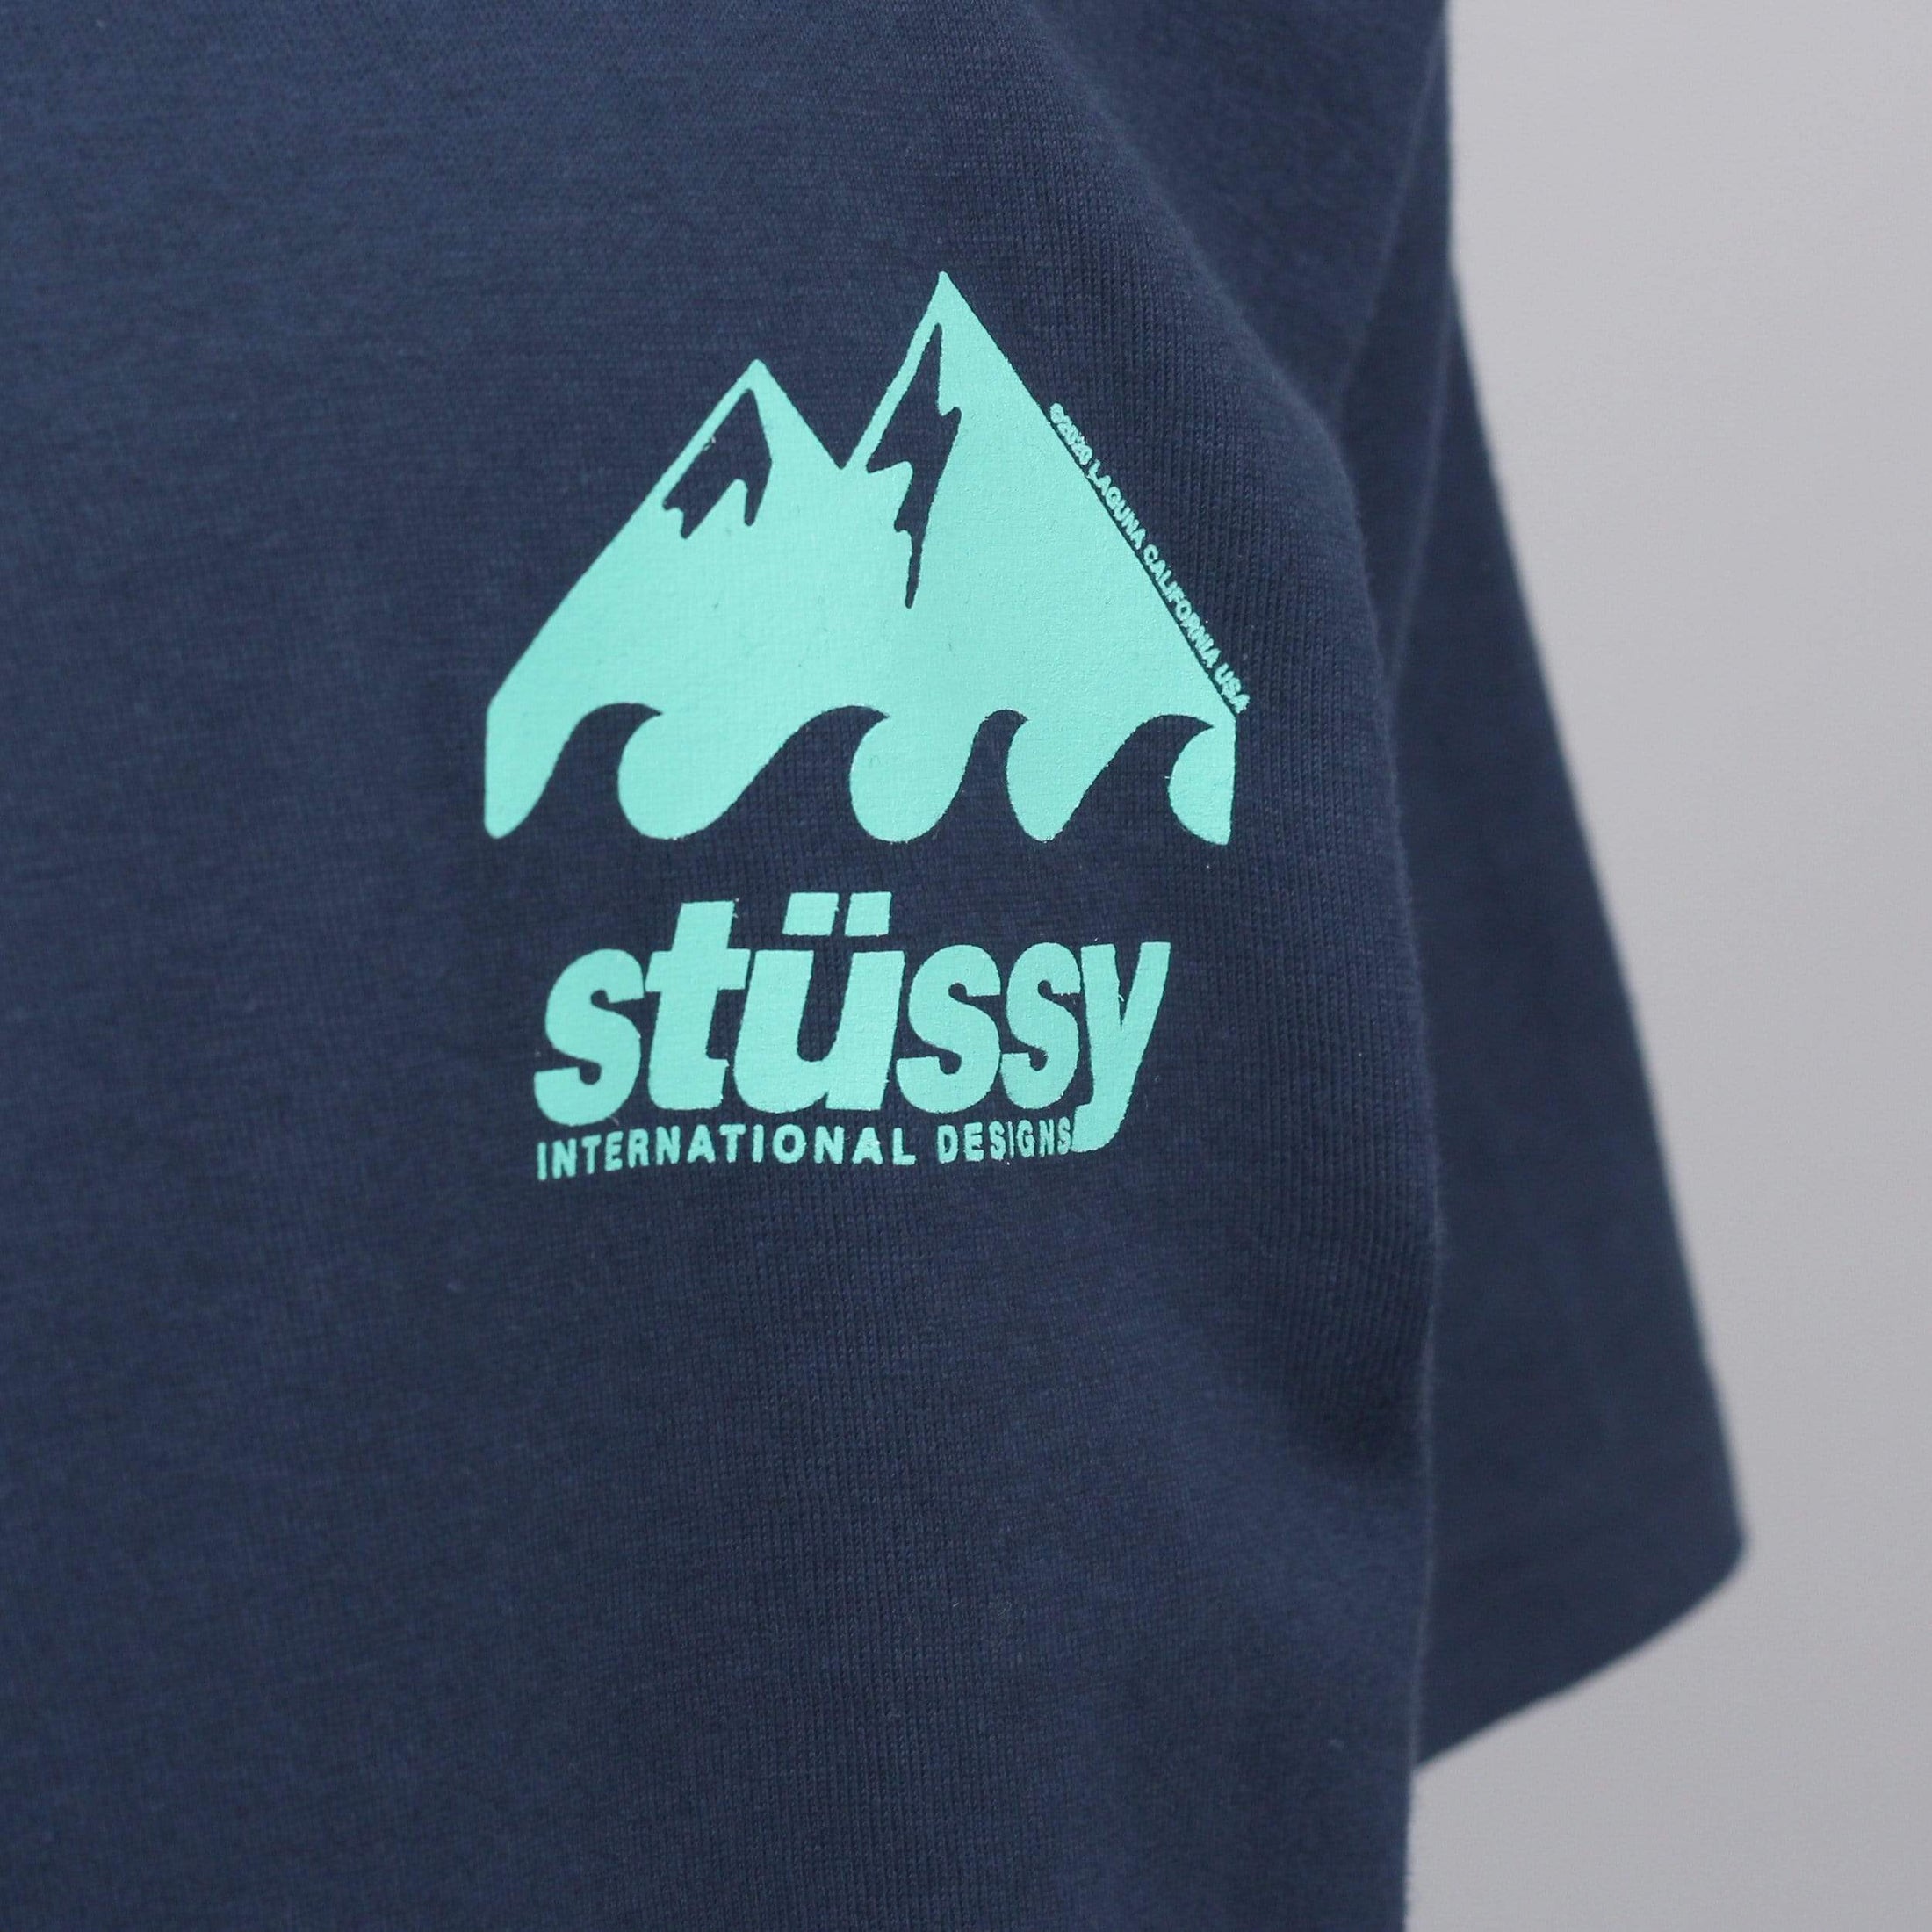 Stussy Coastline T-Shirt Navy